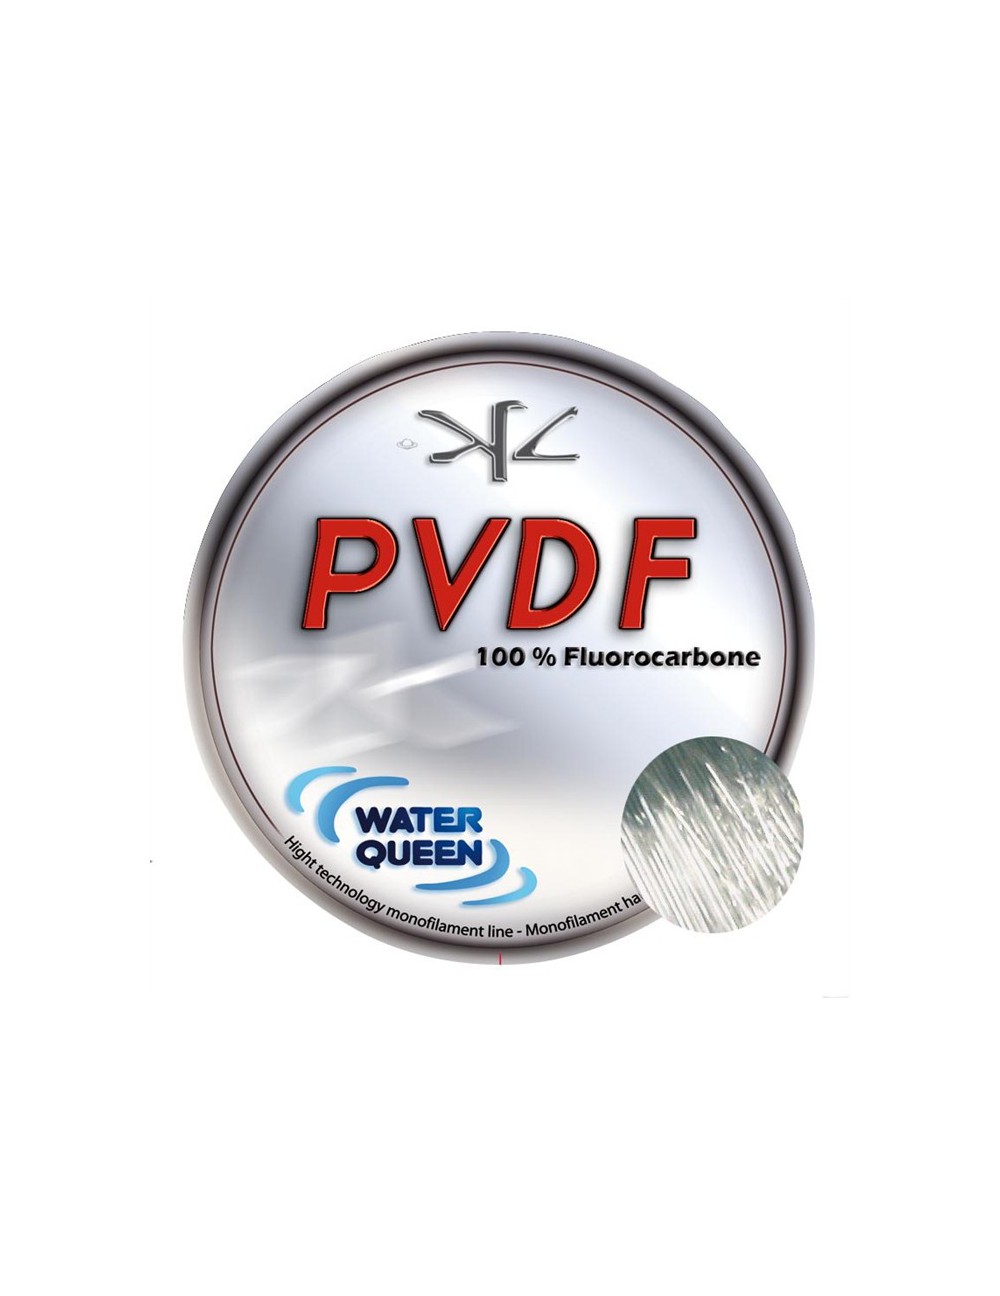 Waterqueen PVDF Fluorocarbone